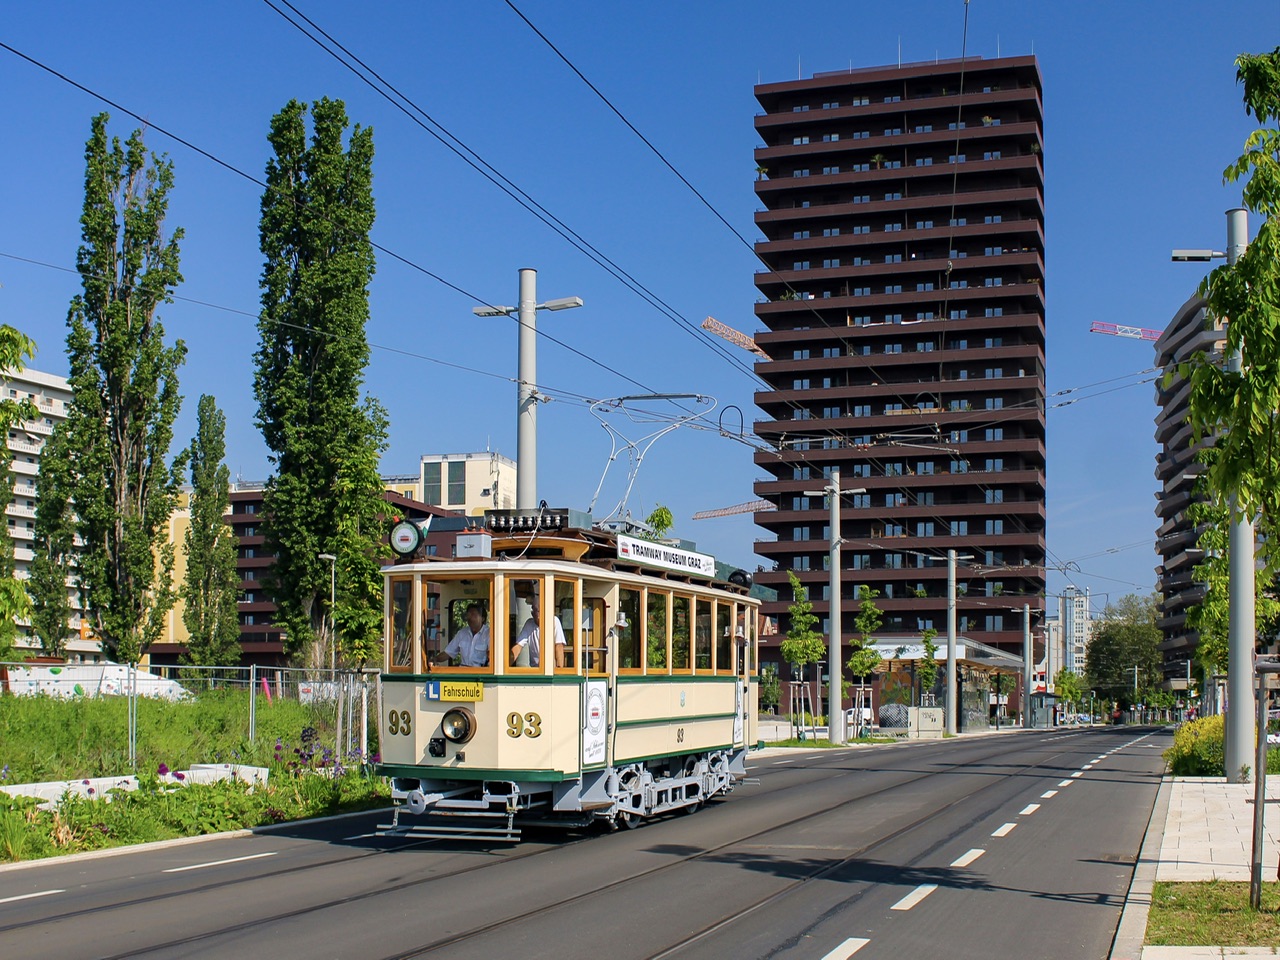 Graz. Am 22.05.2023 war der TW 93 des Tramway Museum Graz auf Fahrschulfahrt, hier auf der UNESCO-Esplanade.